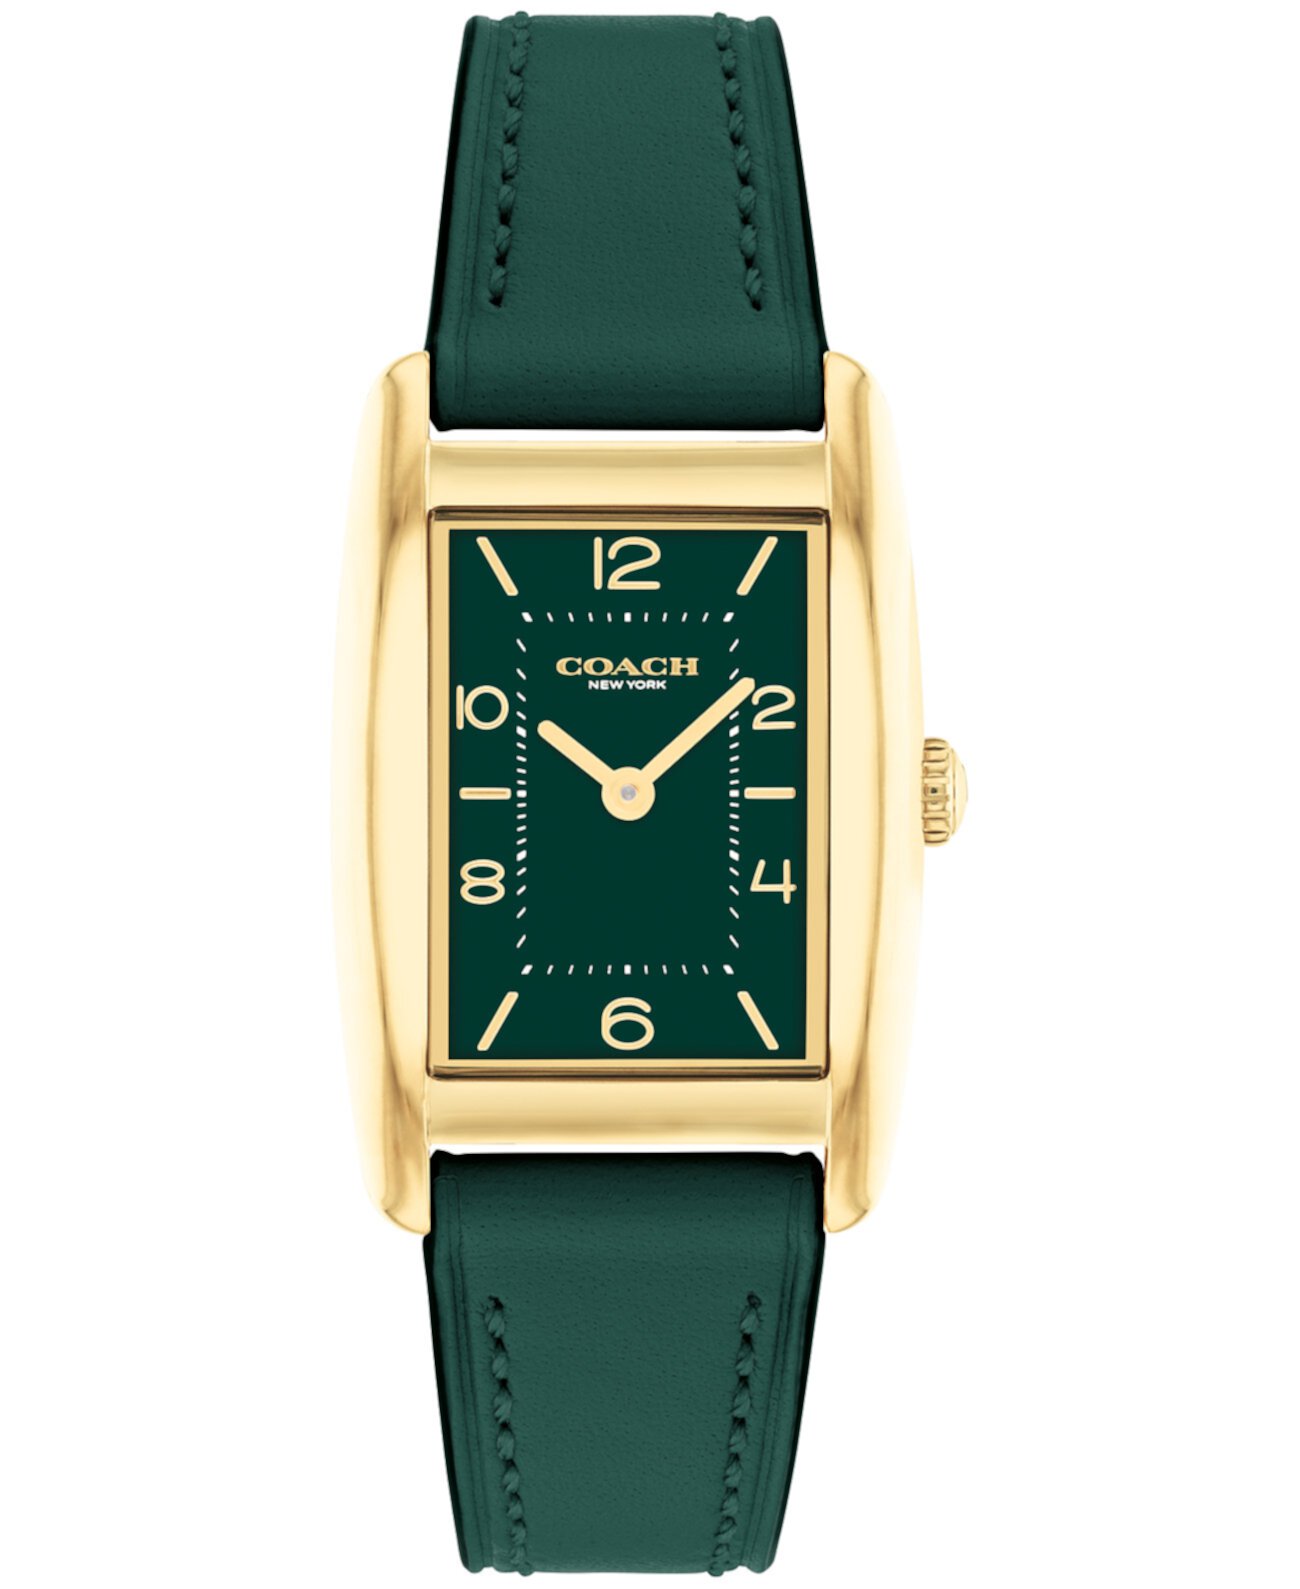 Женские зеленые кожаные часы Resse 24 мм COACH